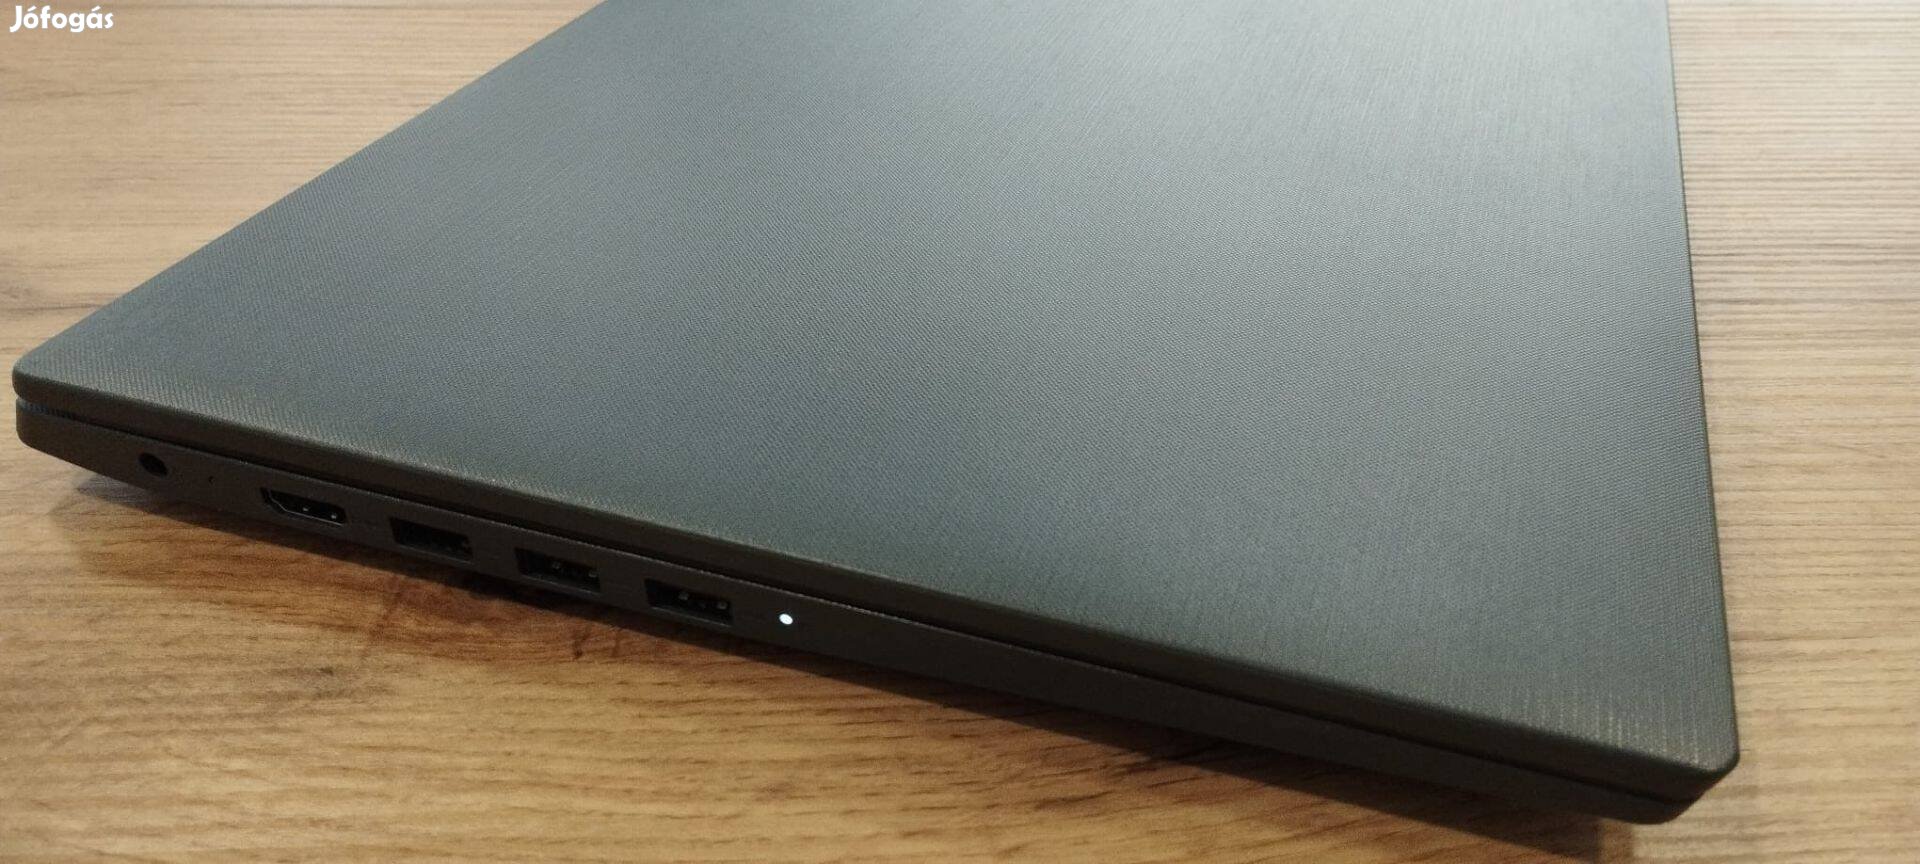 Lenovo AMD laptop notebook, újszerű dobozos állapotban